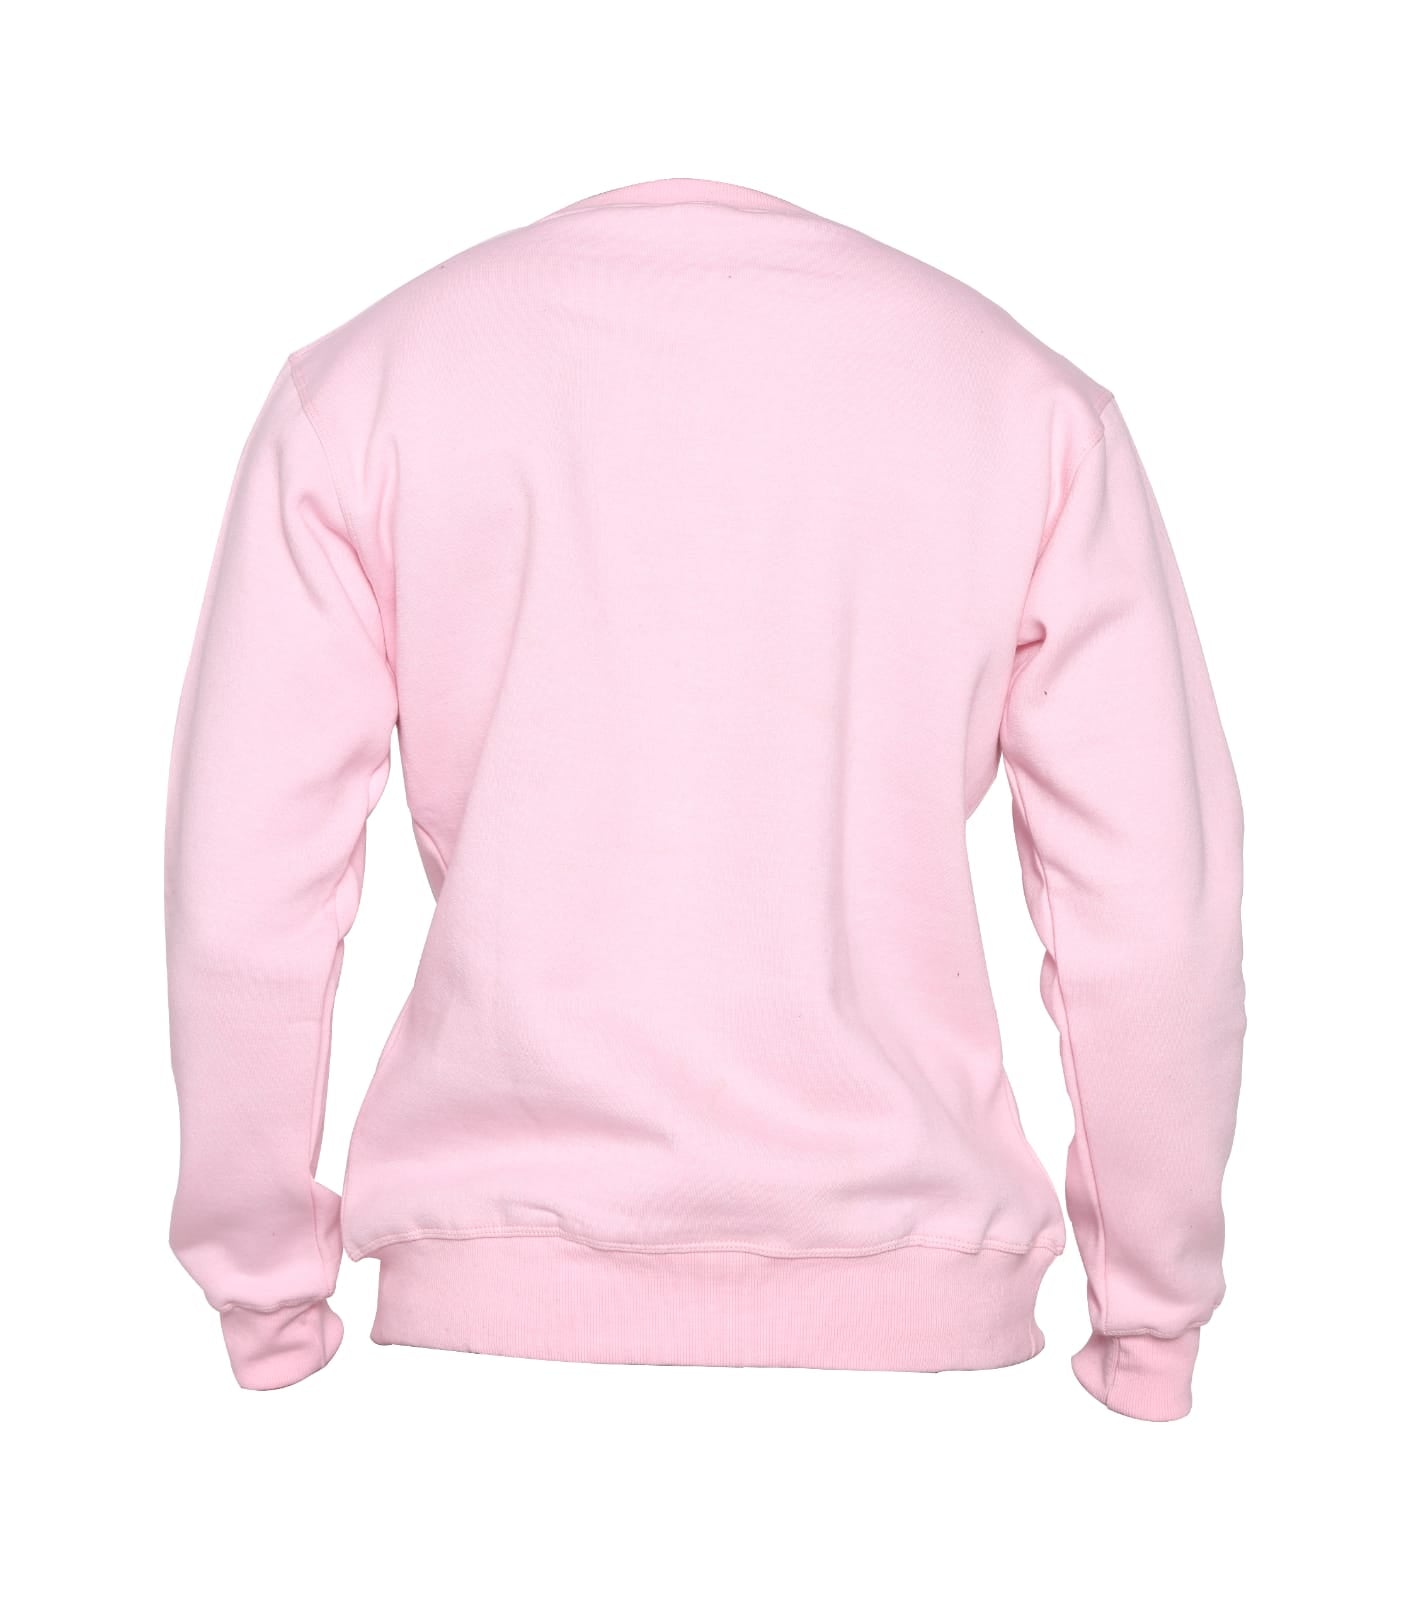 Essential crew neck SweatShirt - Pink